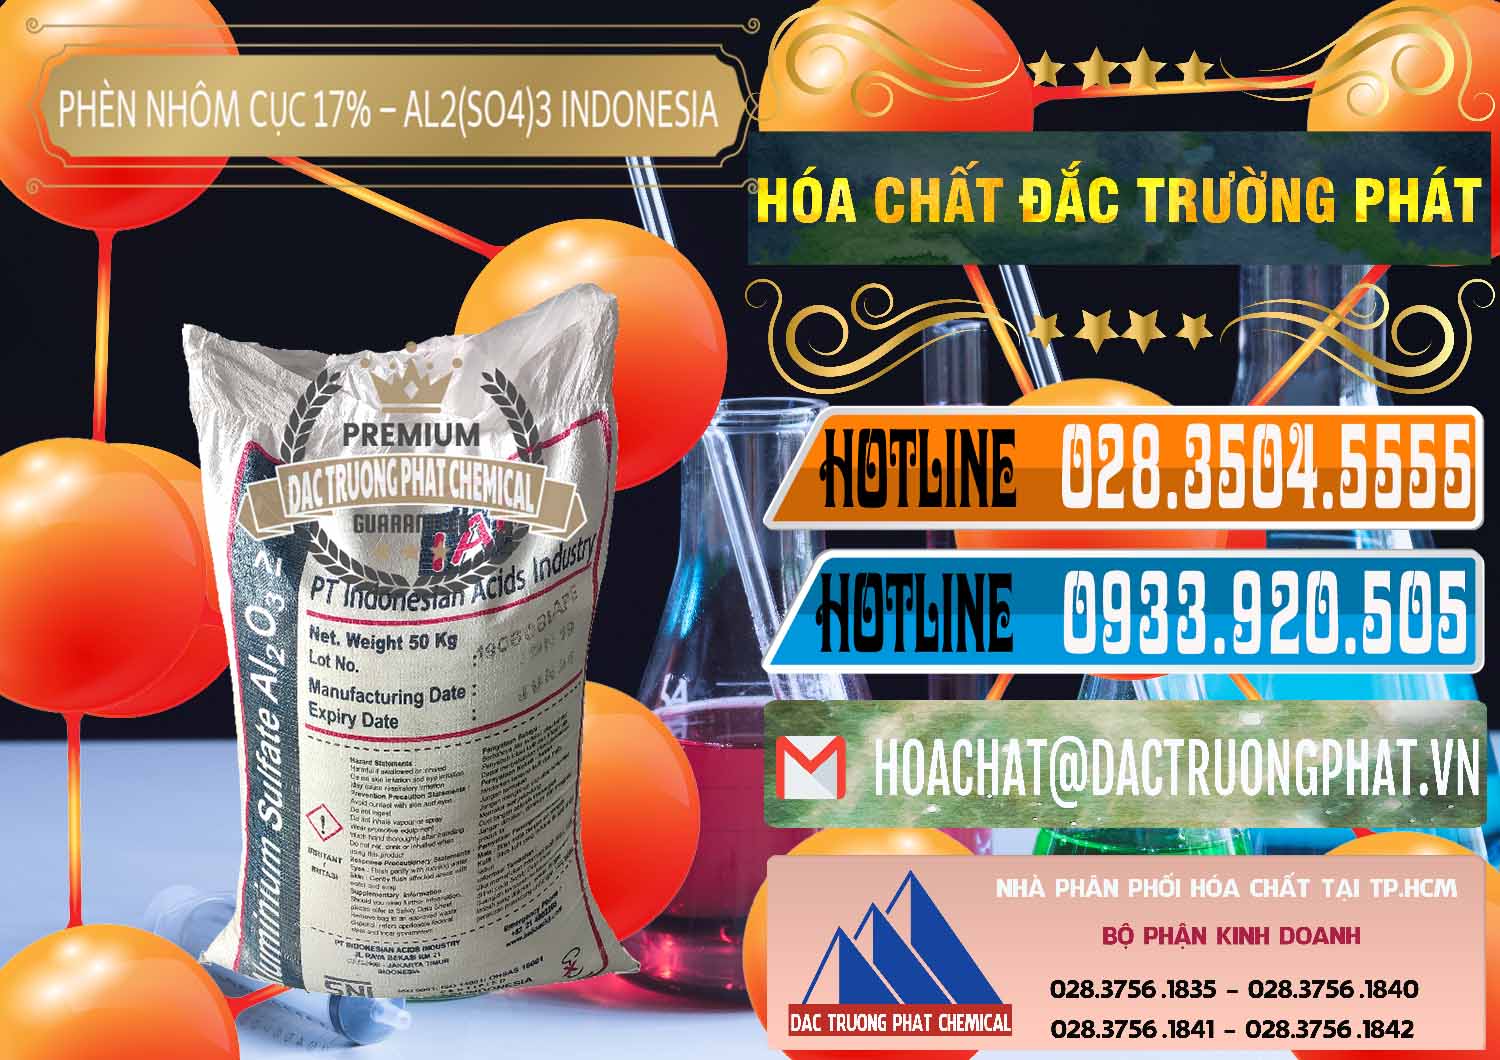 Nơi nhập khẩu và bán Phèn Nhôm Cục - Al2(SO4)3 17% bao 50kg Indonesia - 0113 - Phân phối và kinh doanh hóa chất tại TP.HCM - stmp.net